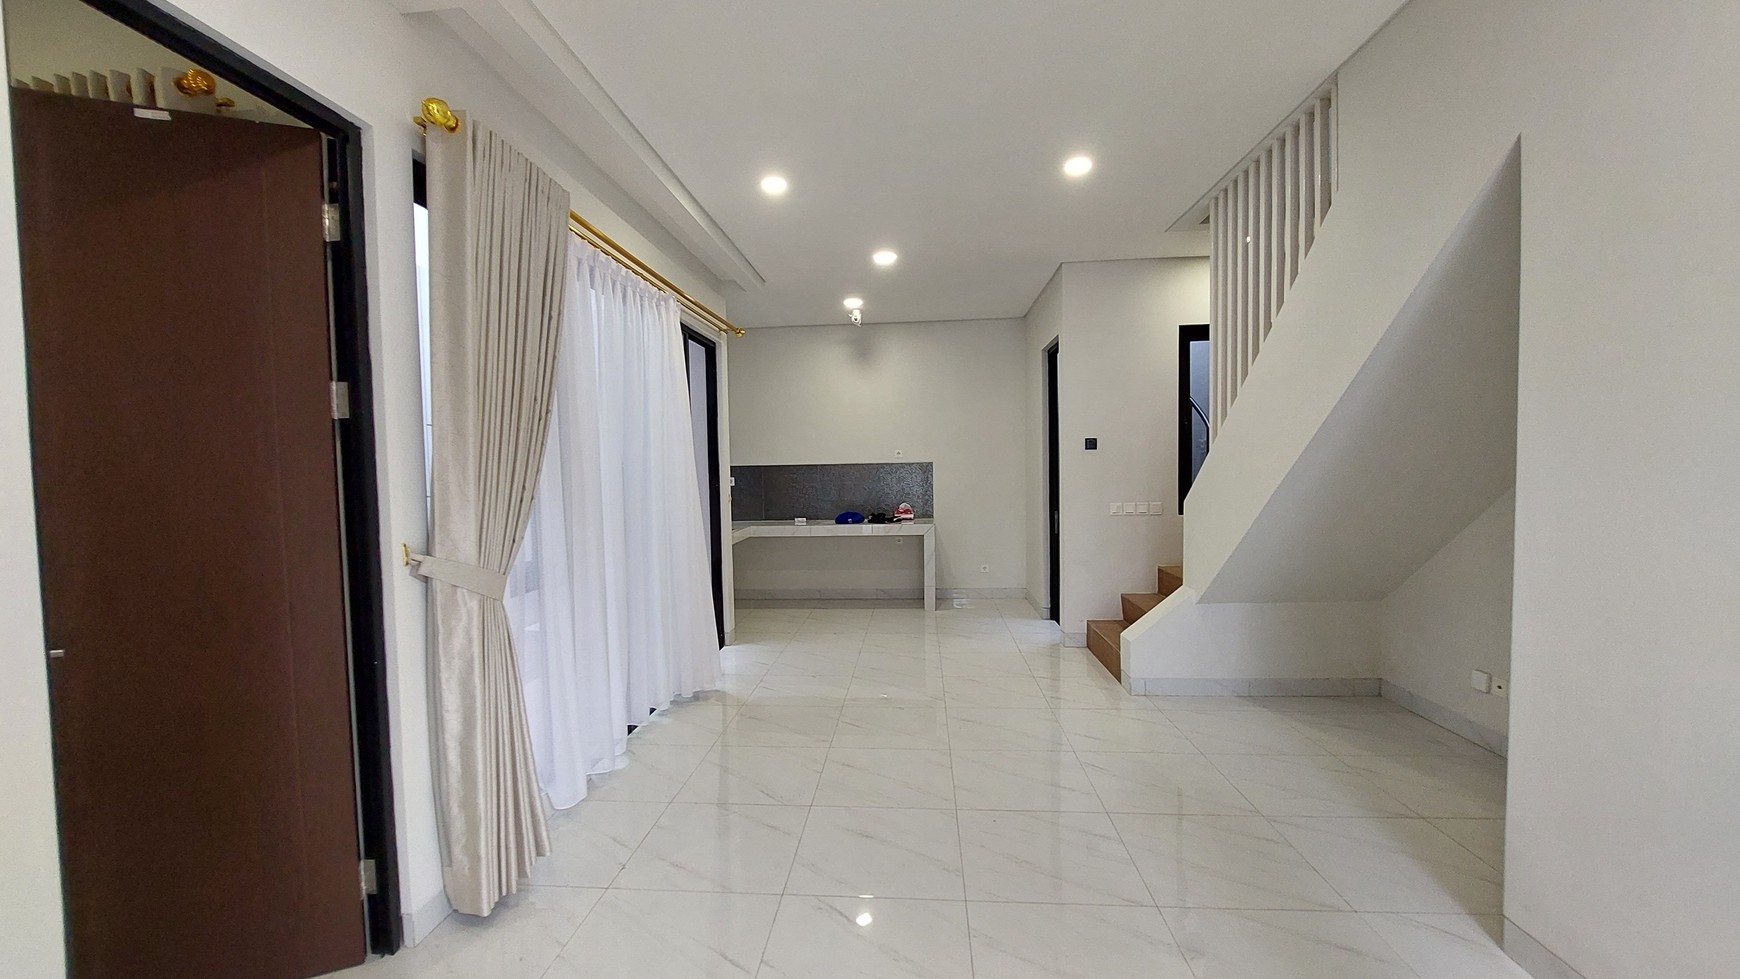 Rumah Baru Smart Home 2,5 lantai di Kota wsiata Cibubur